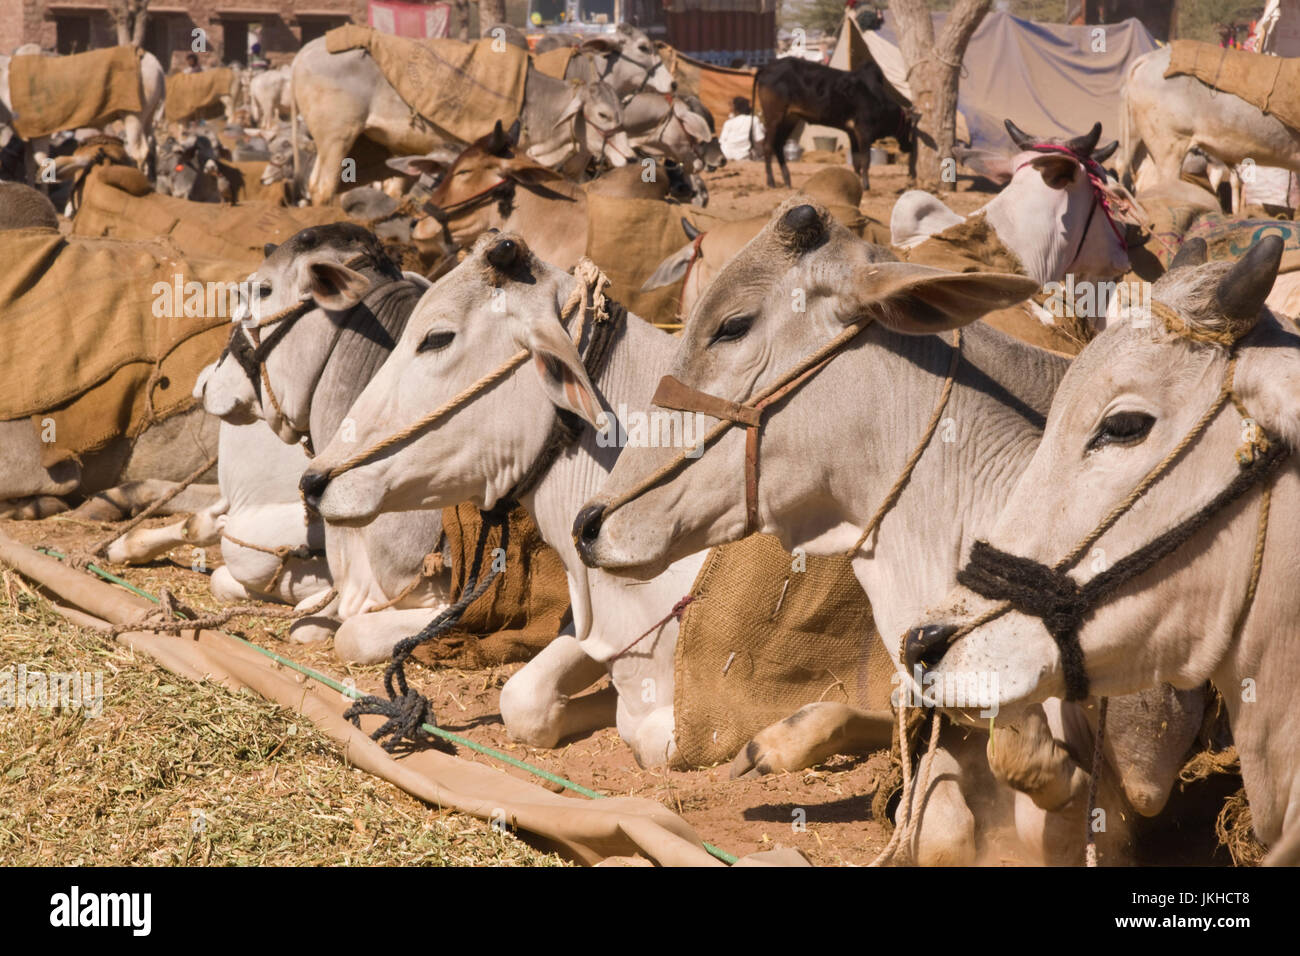 Soigneusement rangées dans des bovins lors de l'assemblée juste Nagaur au Rajasthan, Inde. Banque D'Images